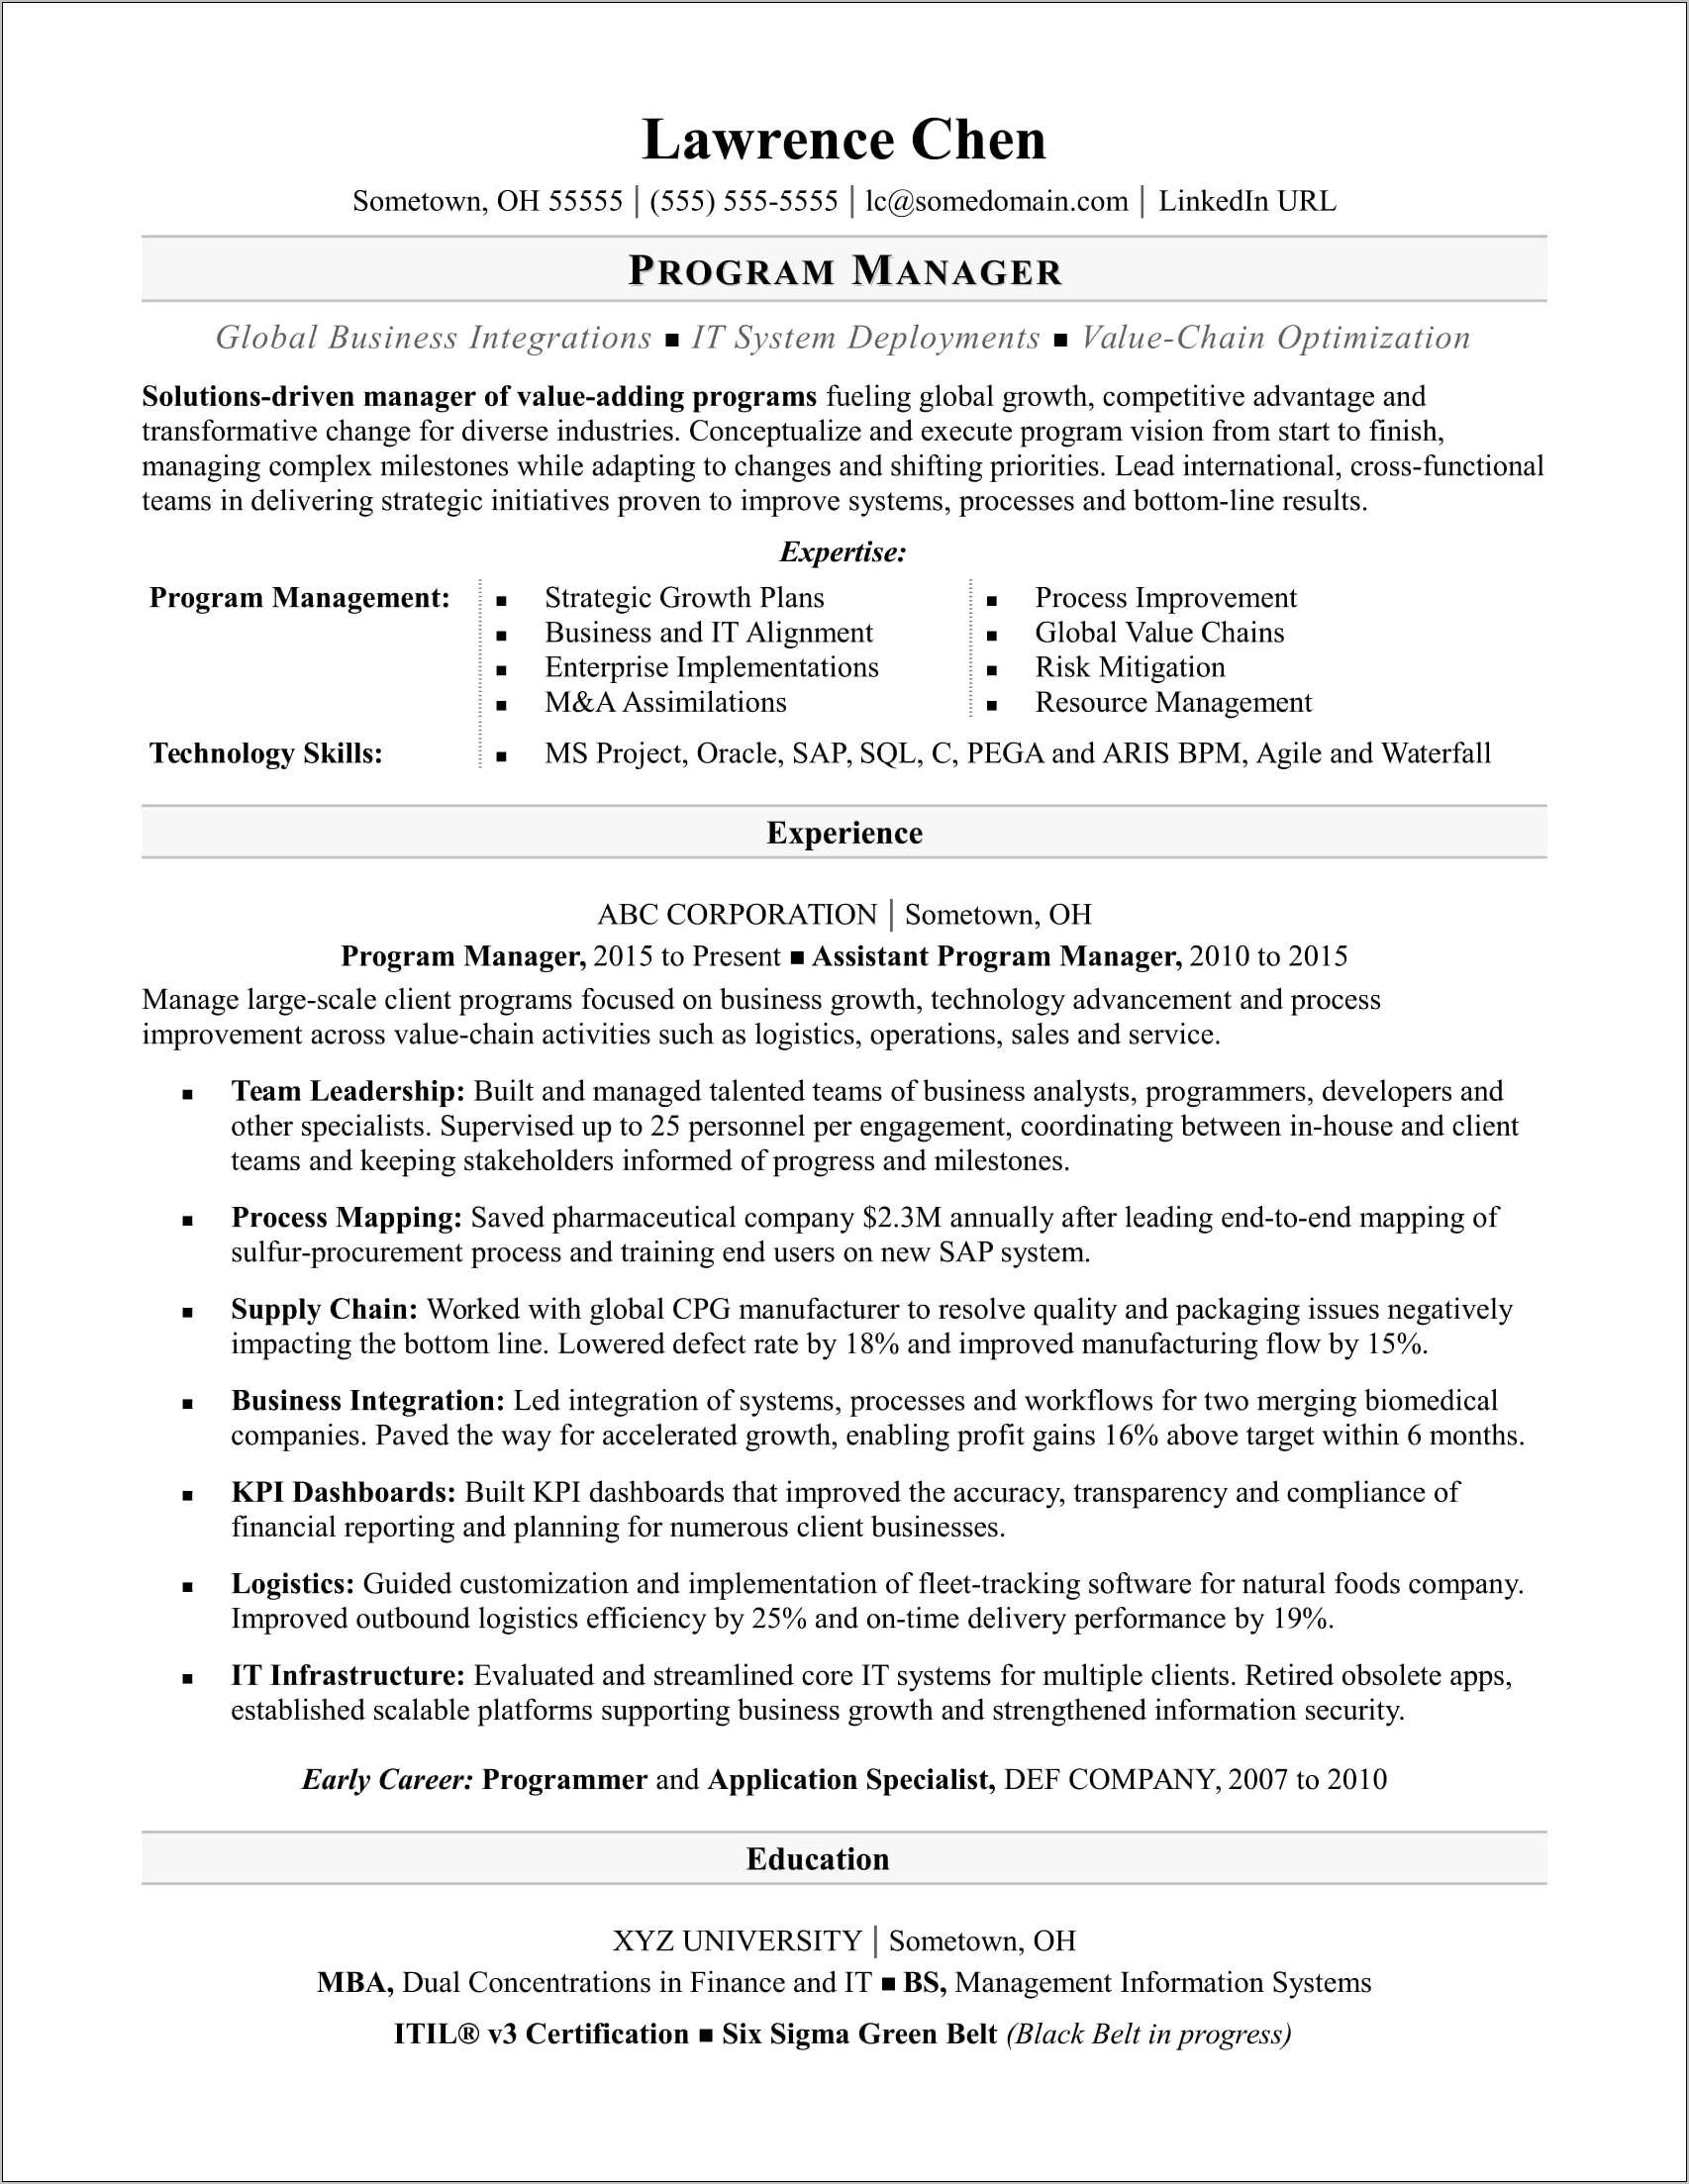 Software Management Skills Description On Resume